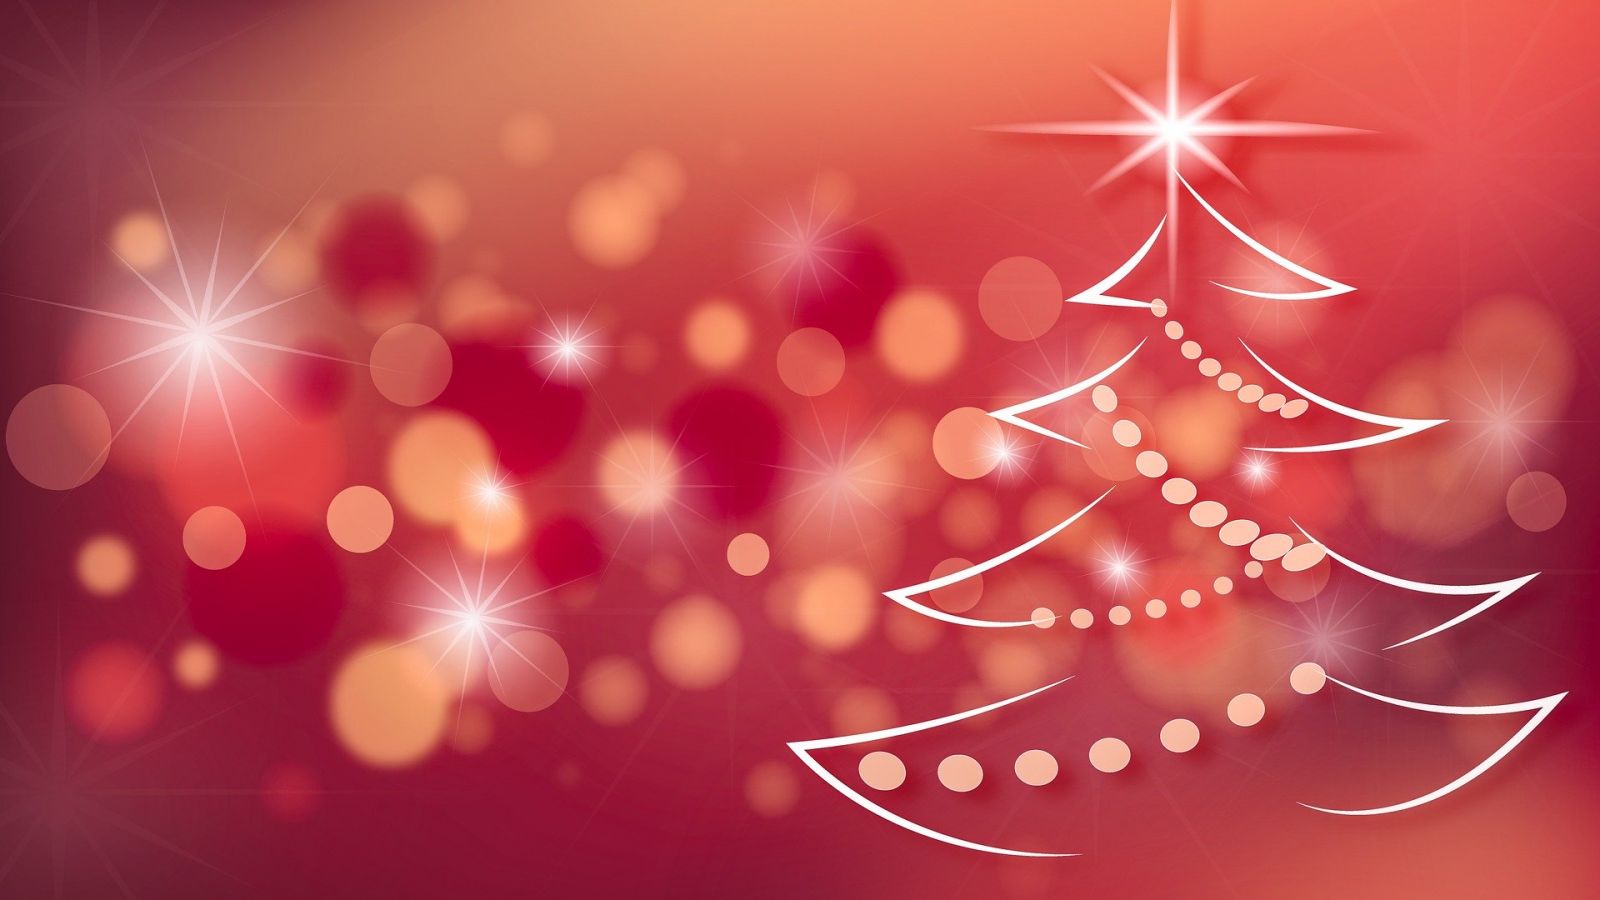 Το Σάββατο ανάβουν τα φώτα του Χριστουγεννιάτικου δέντρου στη Μύκονο με μια μοναδική γιορτή για τα παιδιά